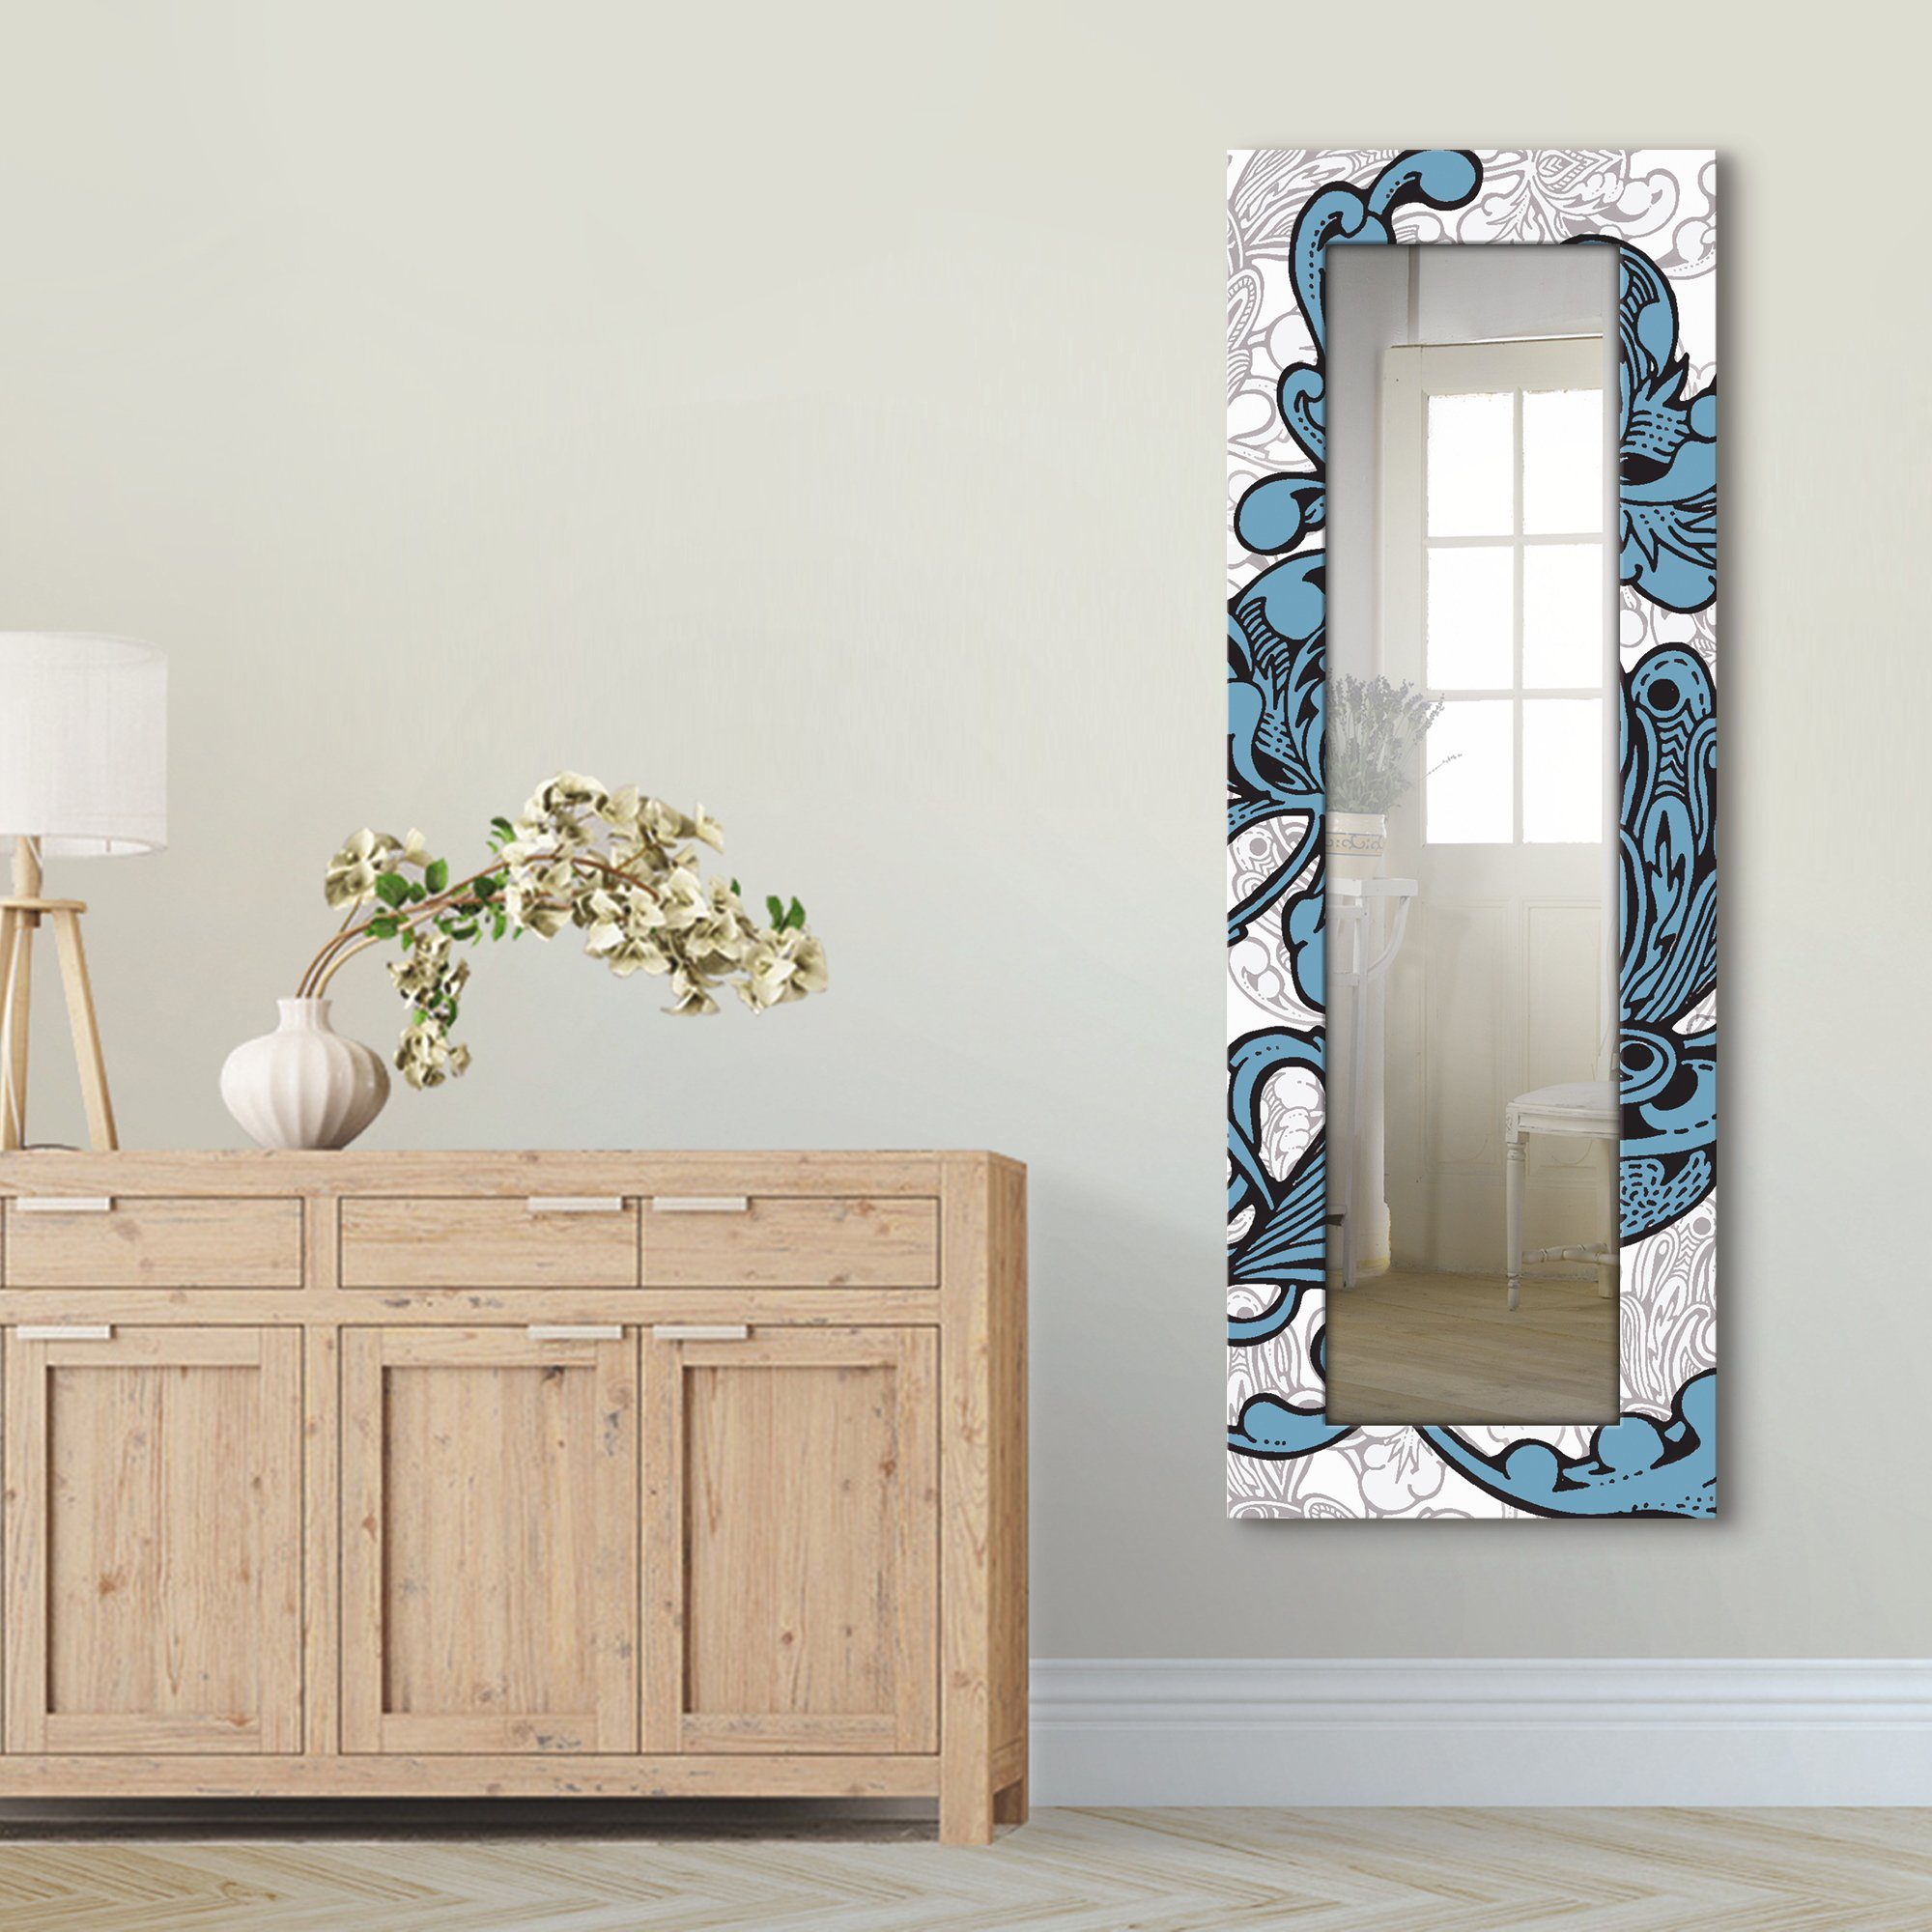 Artland Sierspiegel Blue Ornaments ingelijste spiegel voor het hele lichaam met motiefrand, geschikt voor kleine, smalle hal, halspiegel, mirror spiegel omrand om op te hangen